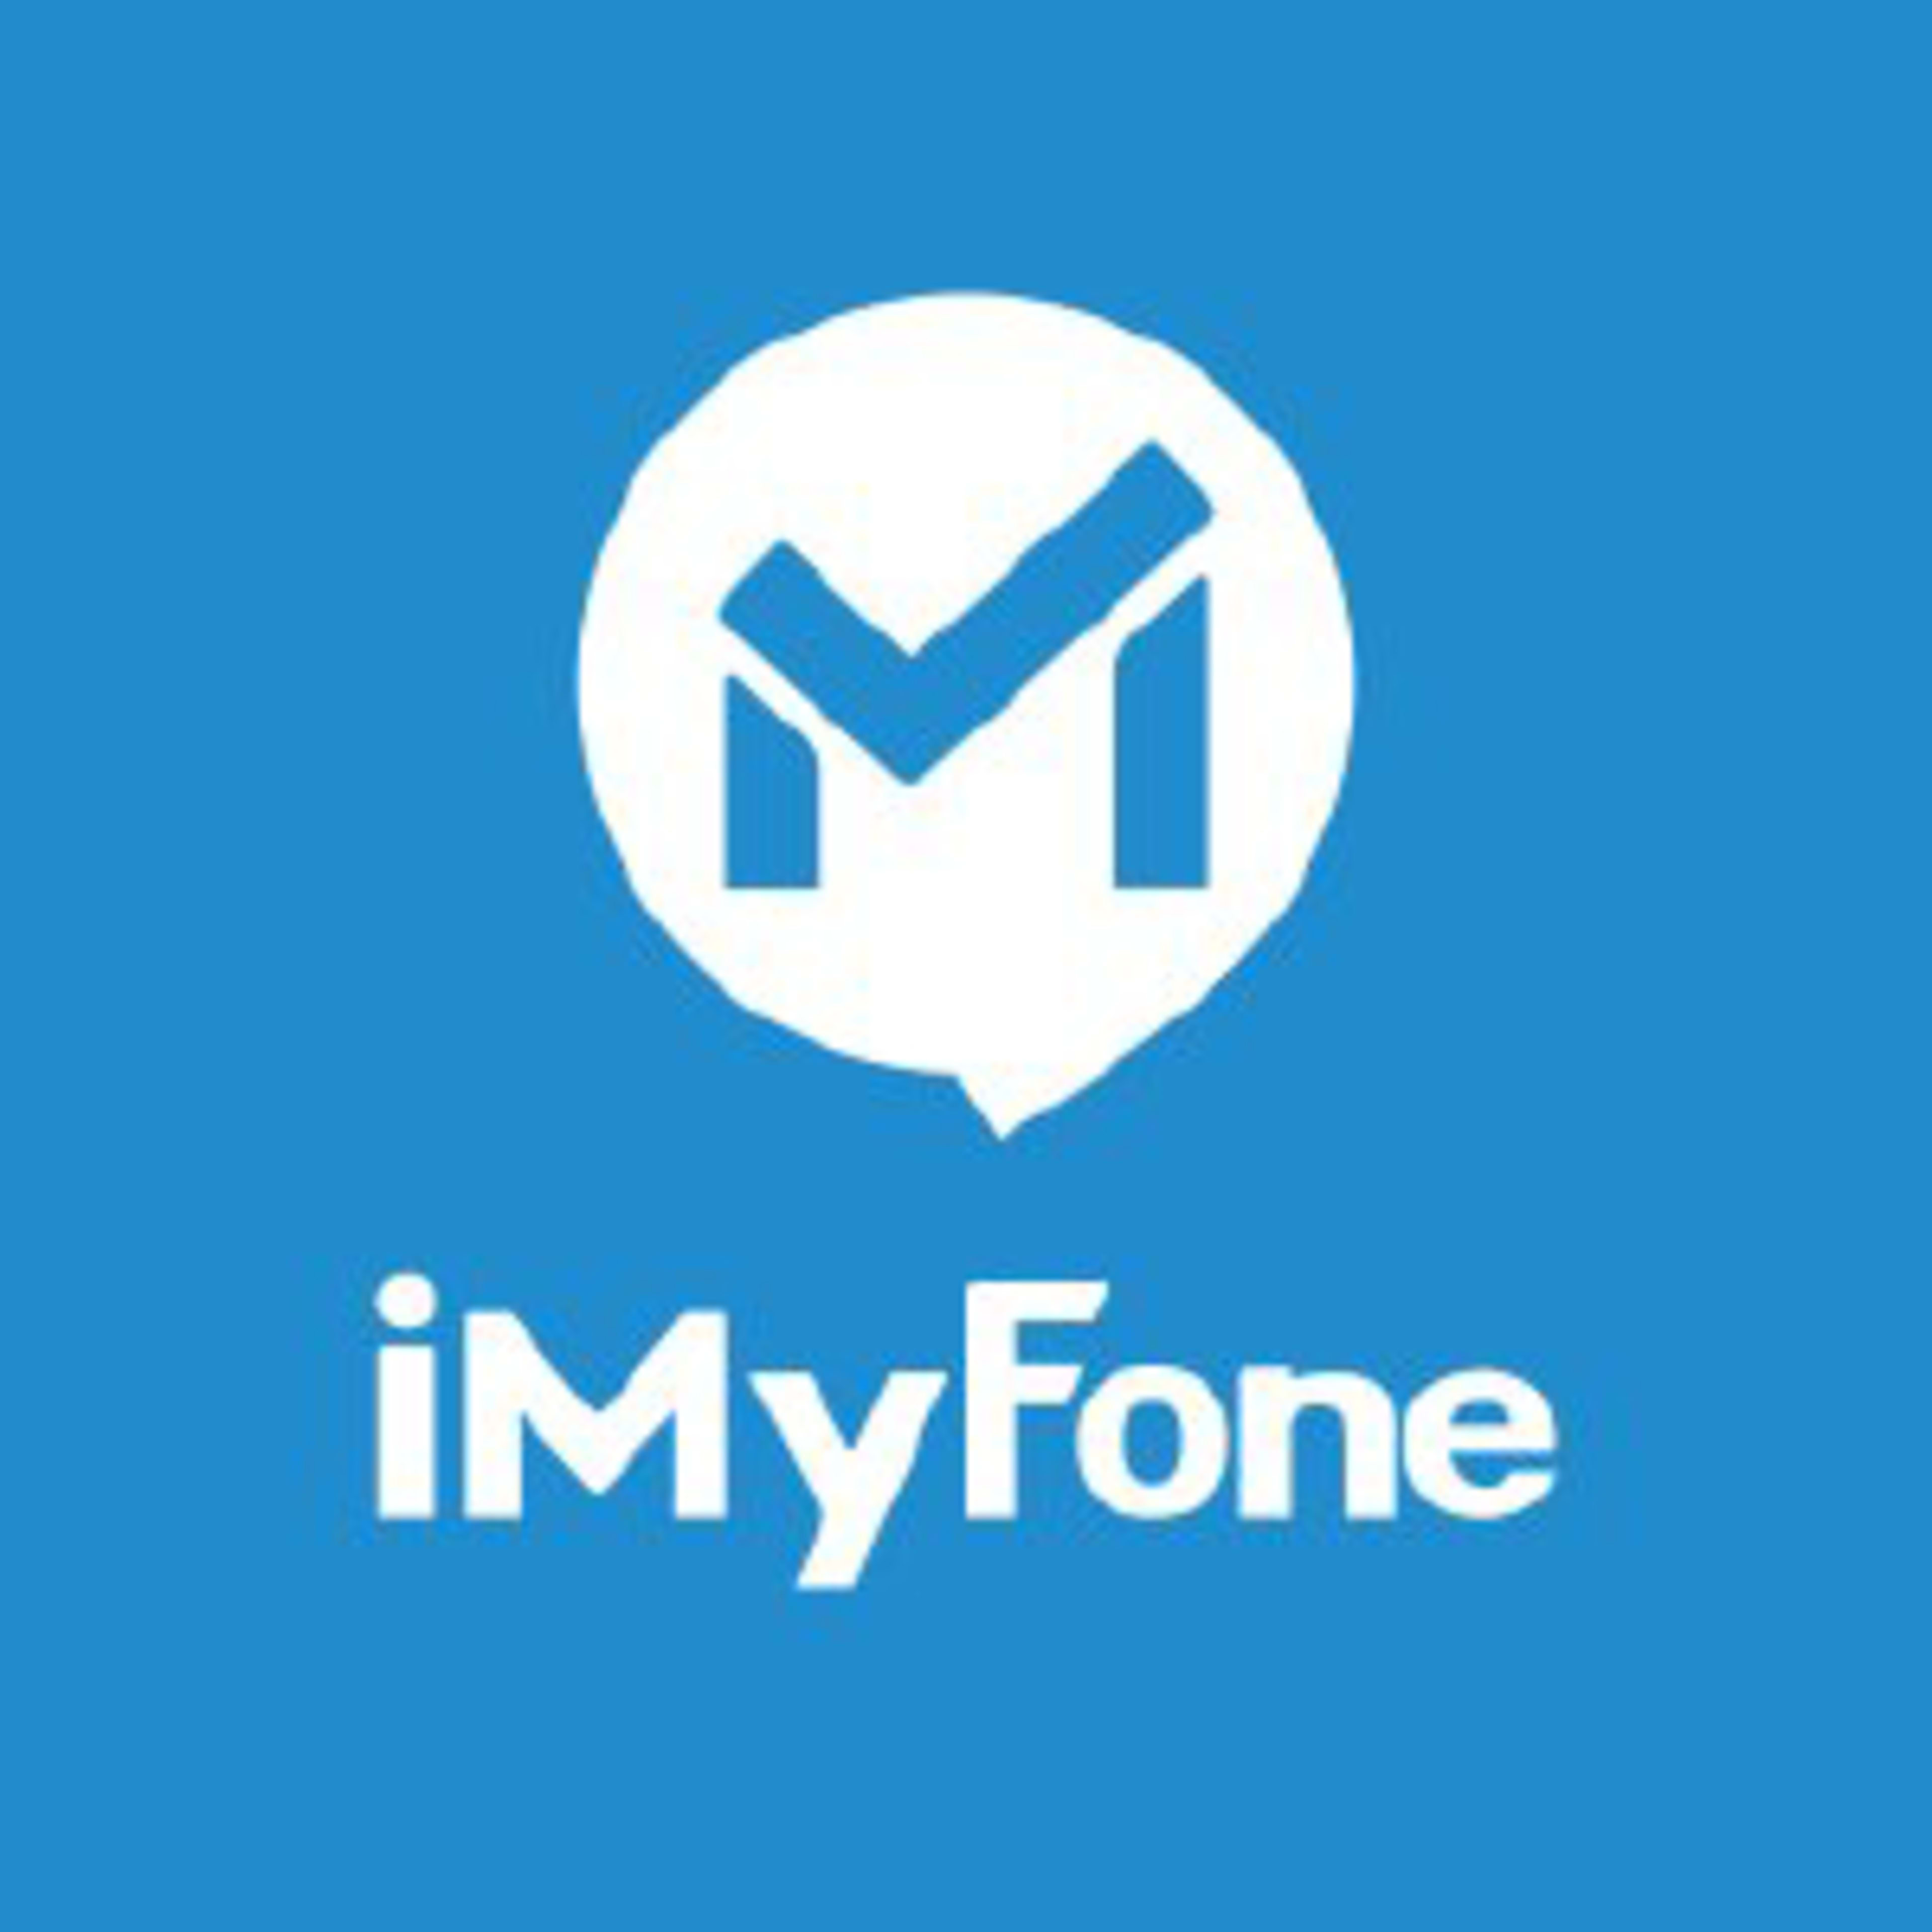 iMyFone Code